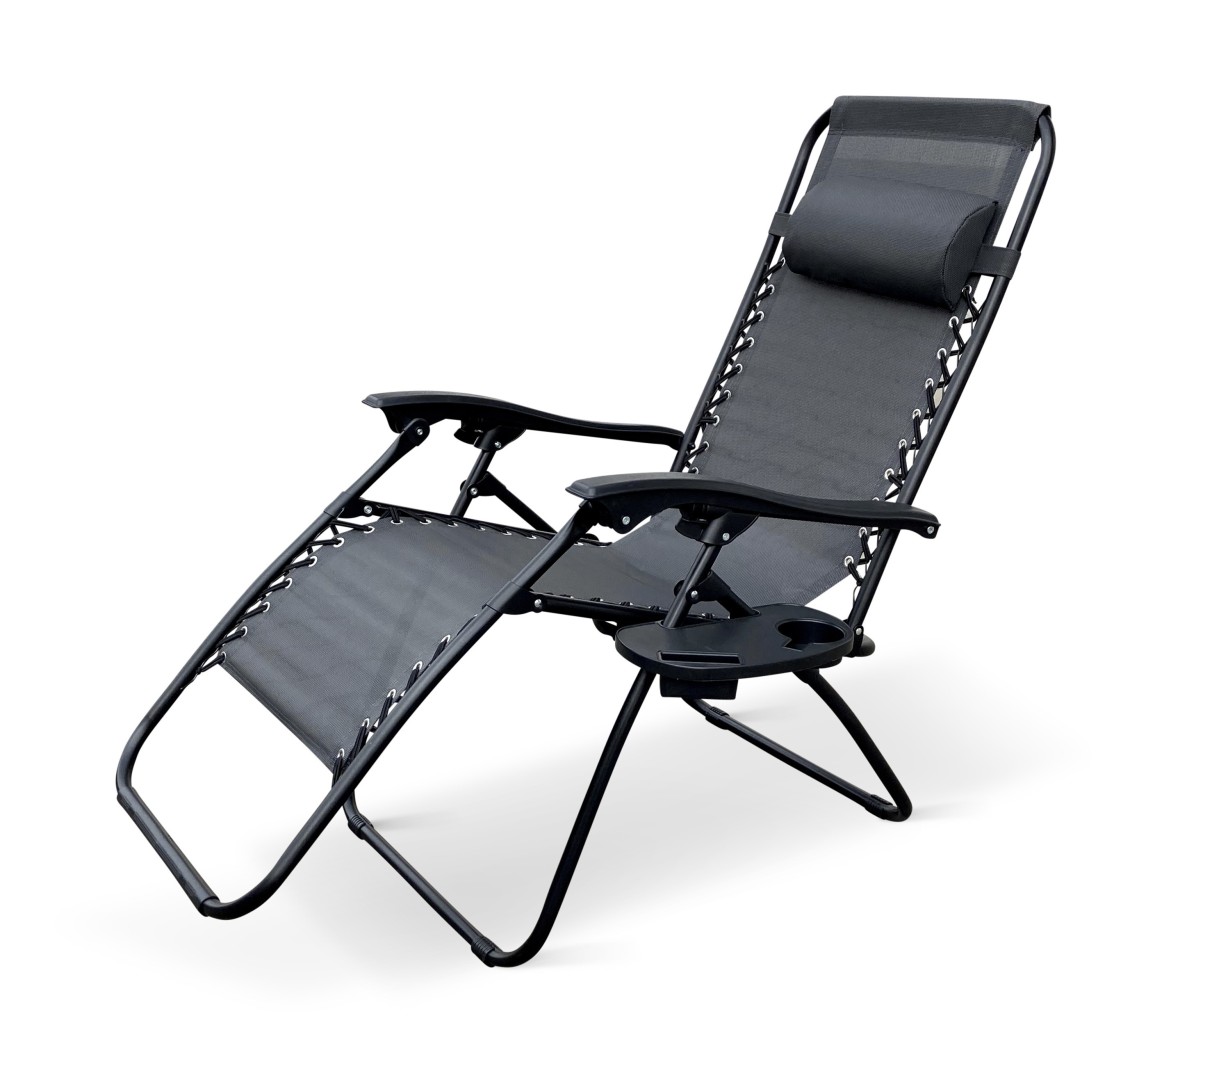 Texim DALLAS - relaxační křeslo šedé + držák na hrnek a mobil zdarma, ocel + textil